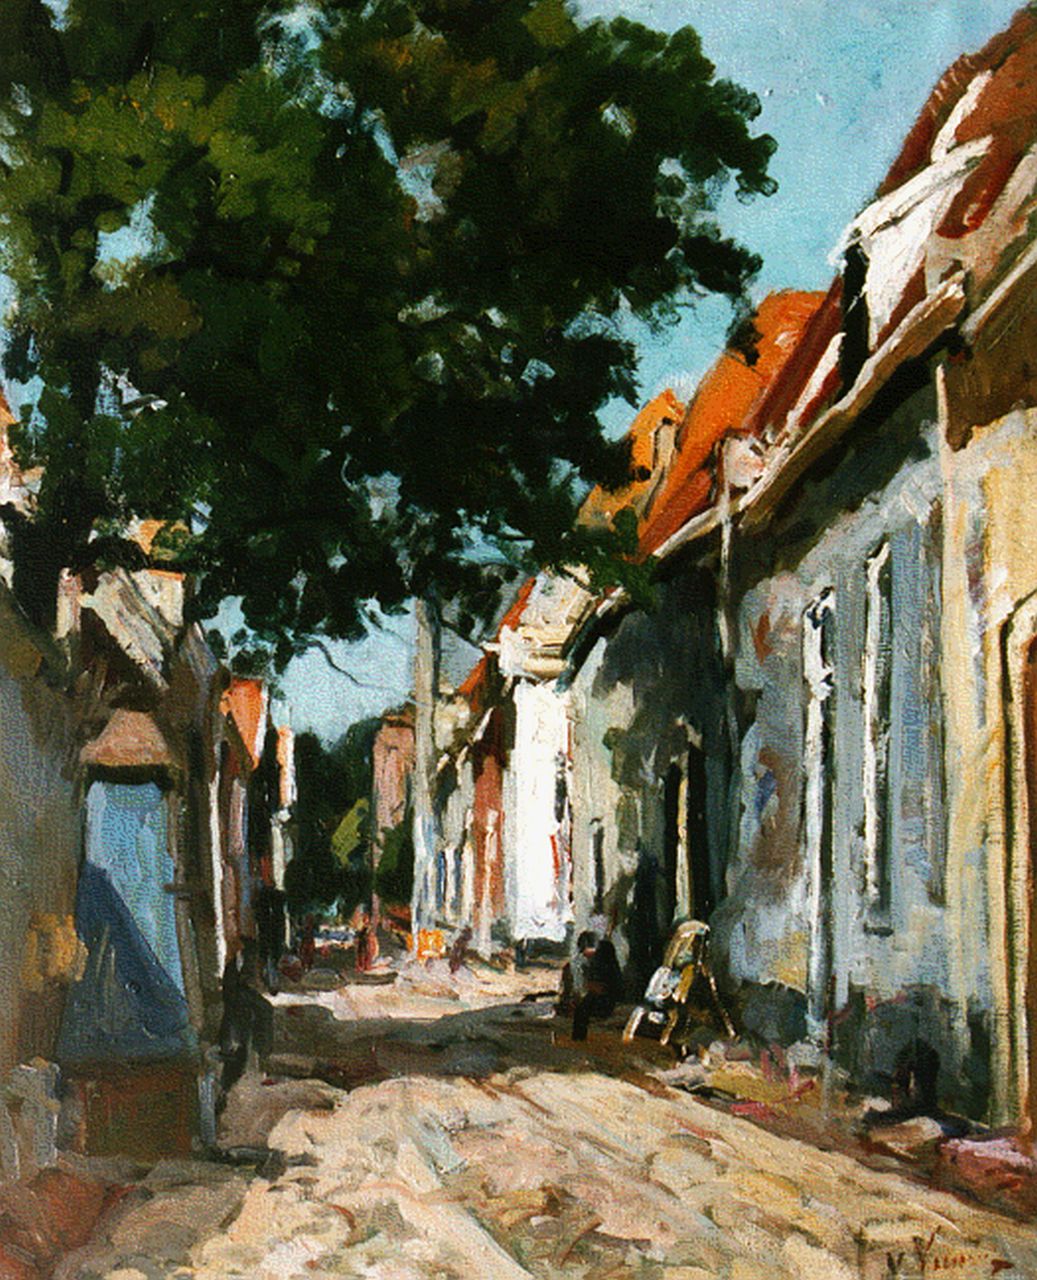 Vuuren J. van | Jan van Vuuren, A sunlit street, oil on canvas 50.0 x 40.0 cm, signed l.r.